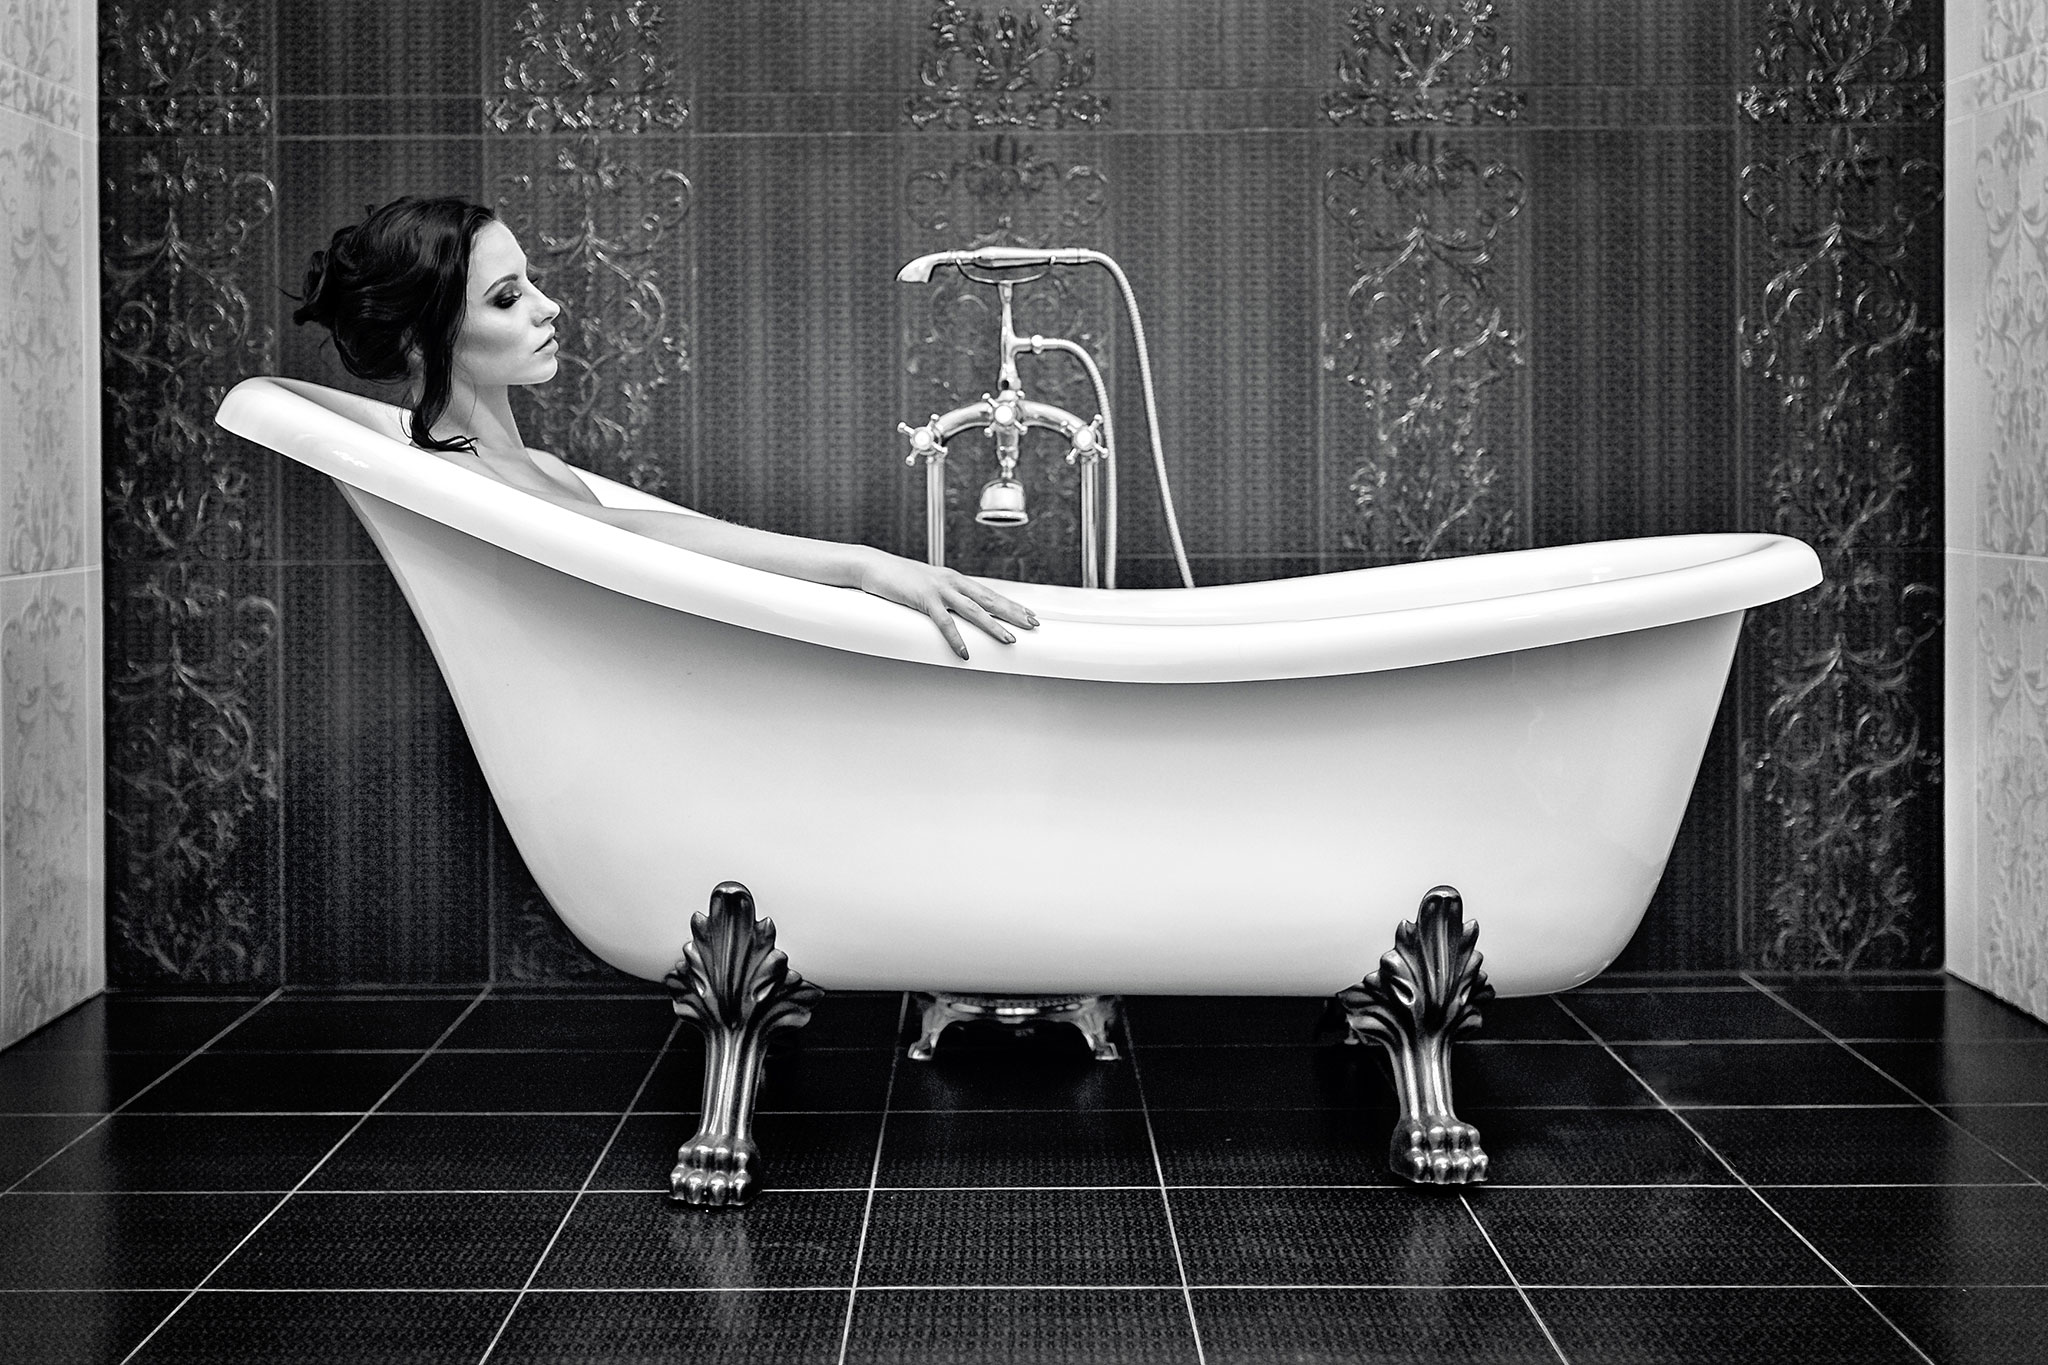 Ettertenksom svarthåret kvinne ligger i et vakkert stilig badekar